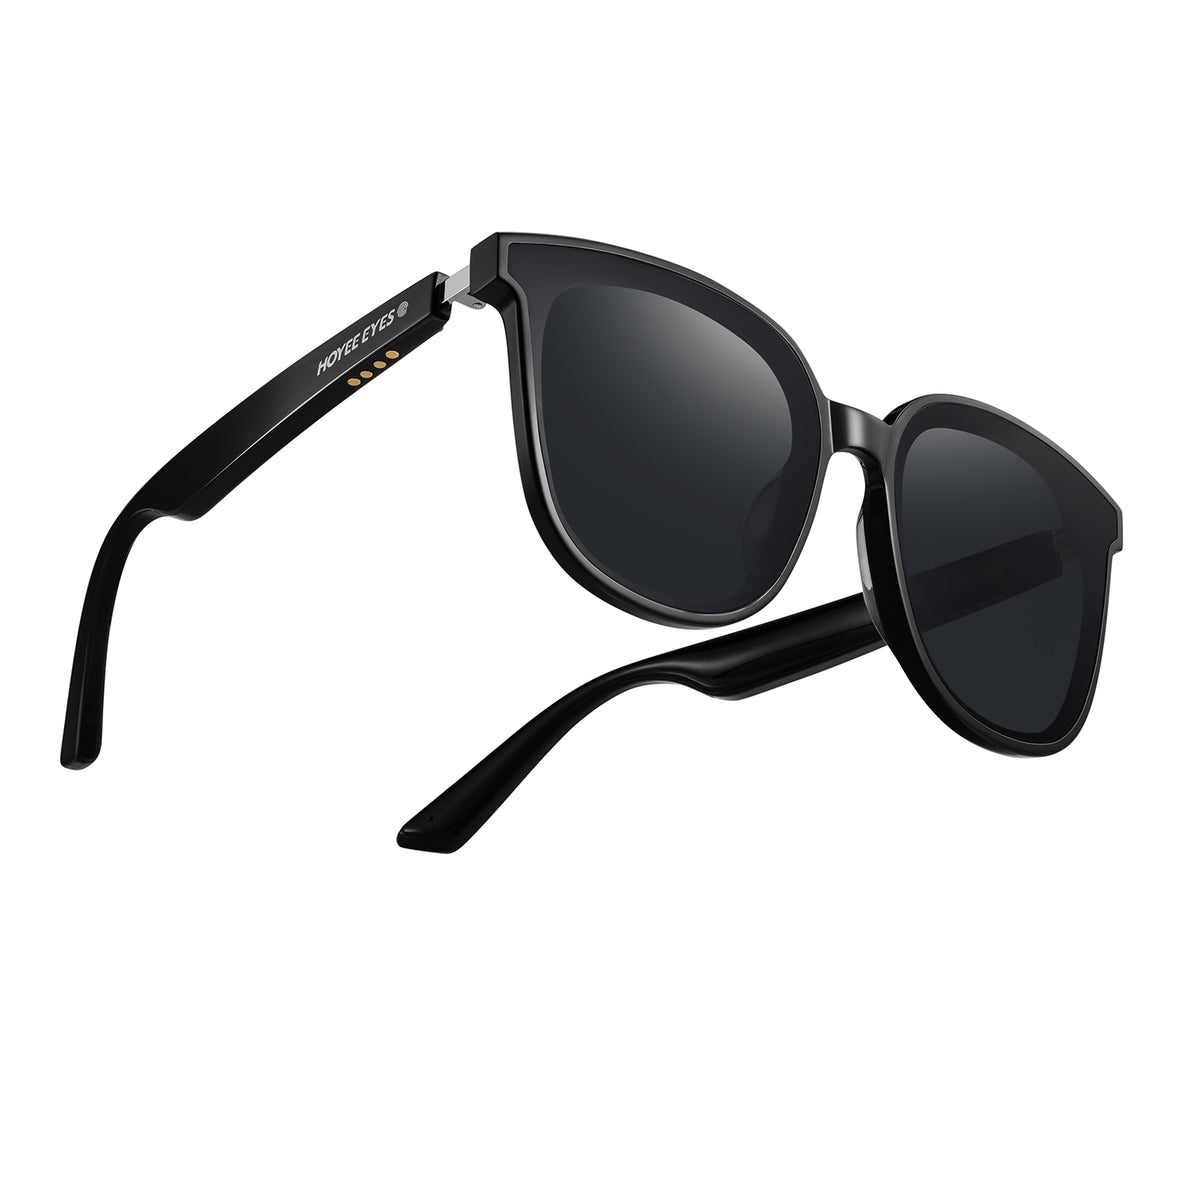 Hoyee Eyes Galaxia - Smart Sunglasses